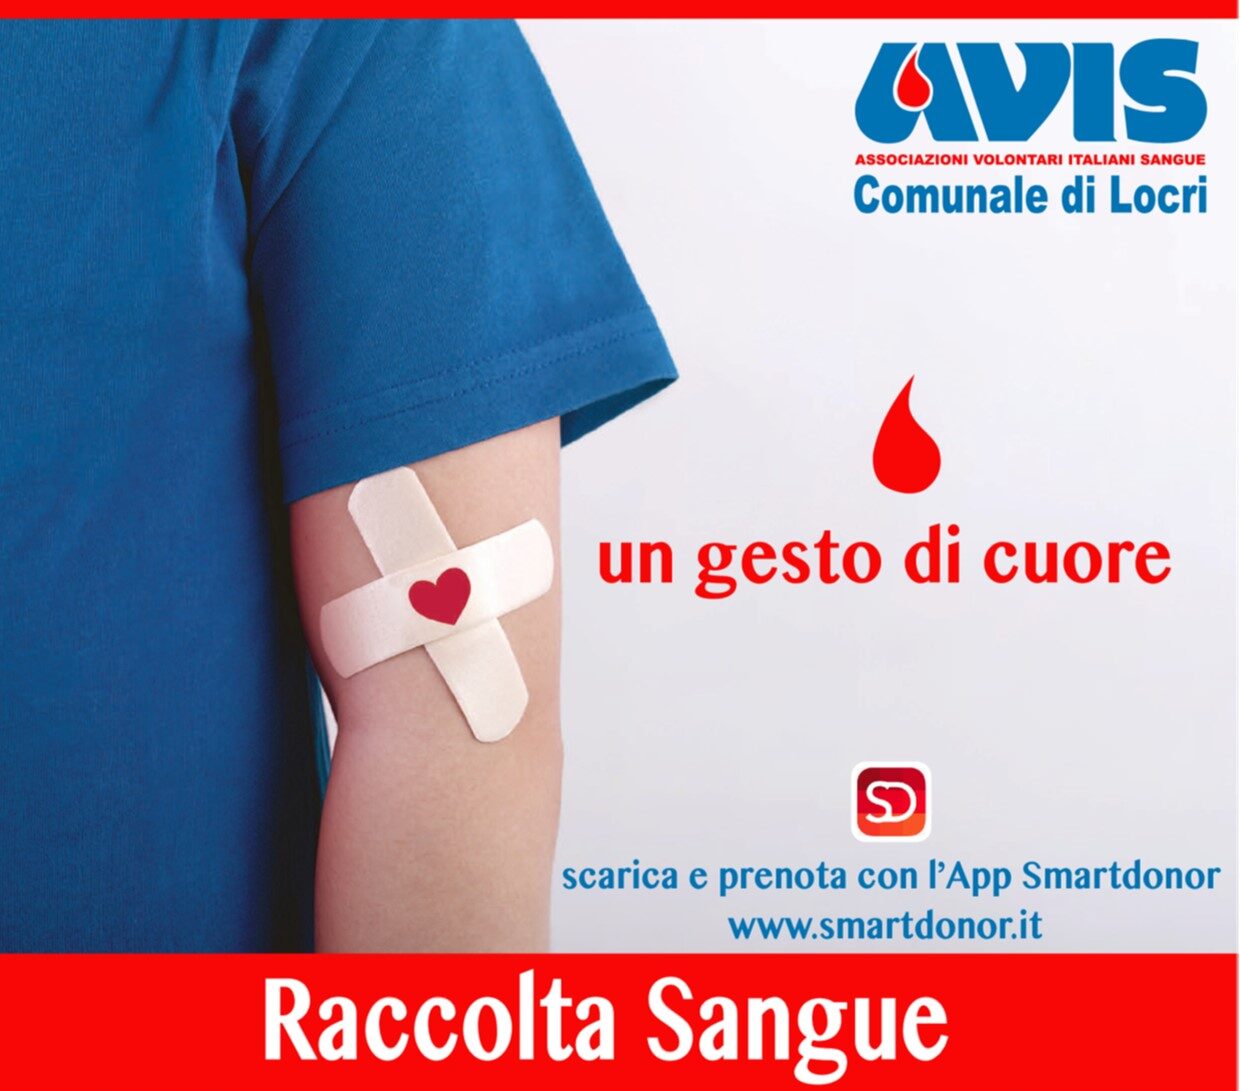 L’AVIS Comunale di Locri comunica le date delle raccolte di sangue per il mese di dicembre 2022